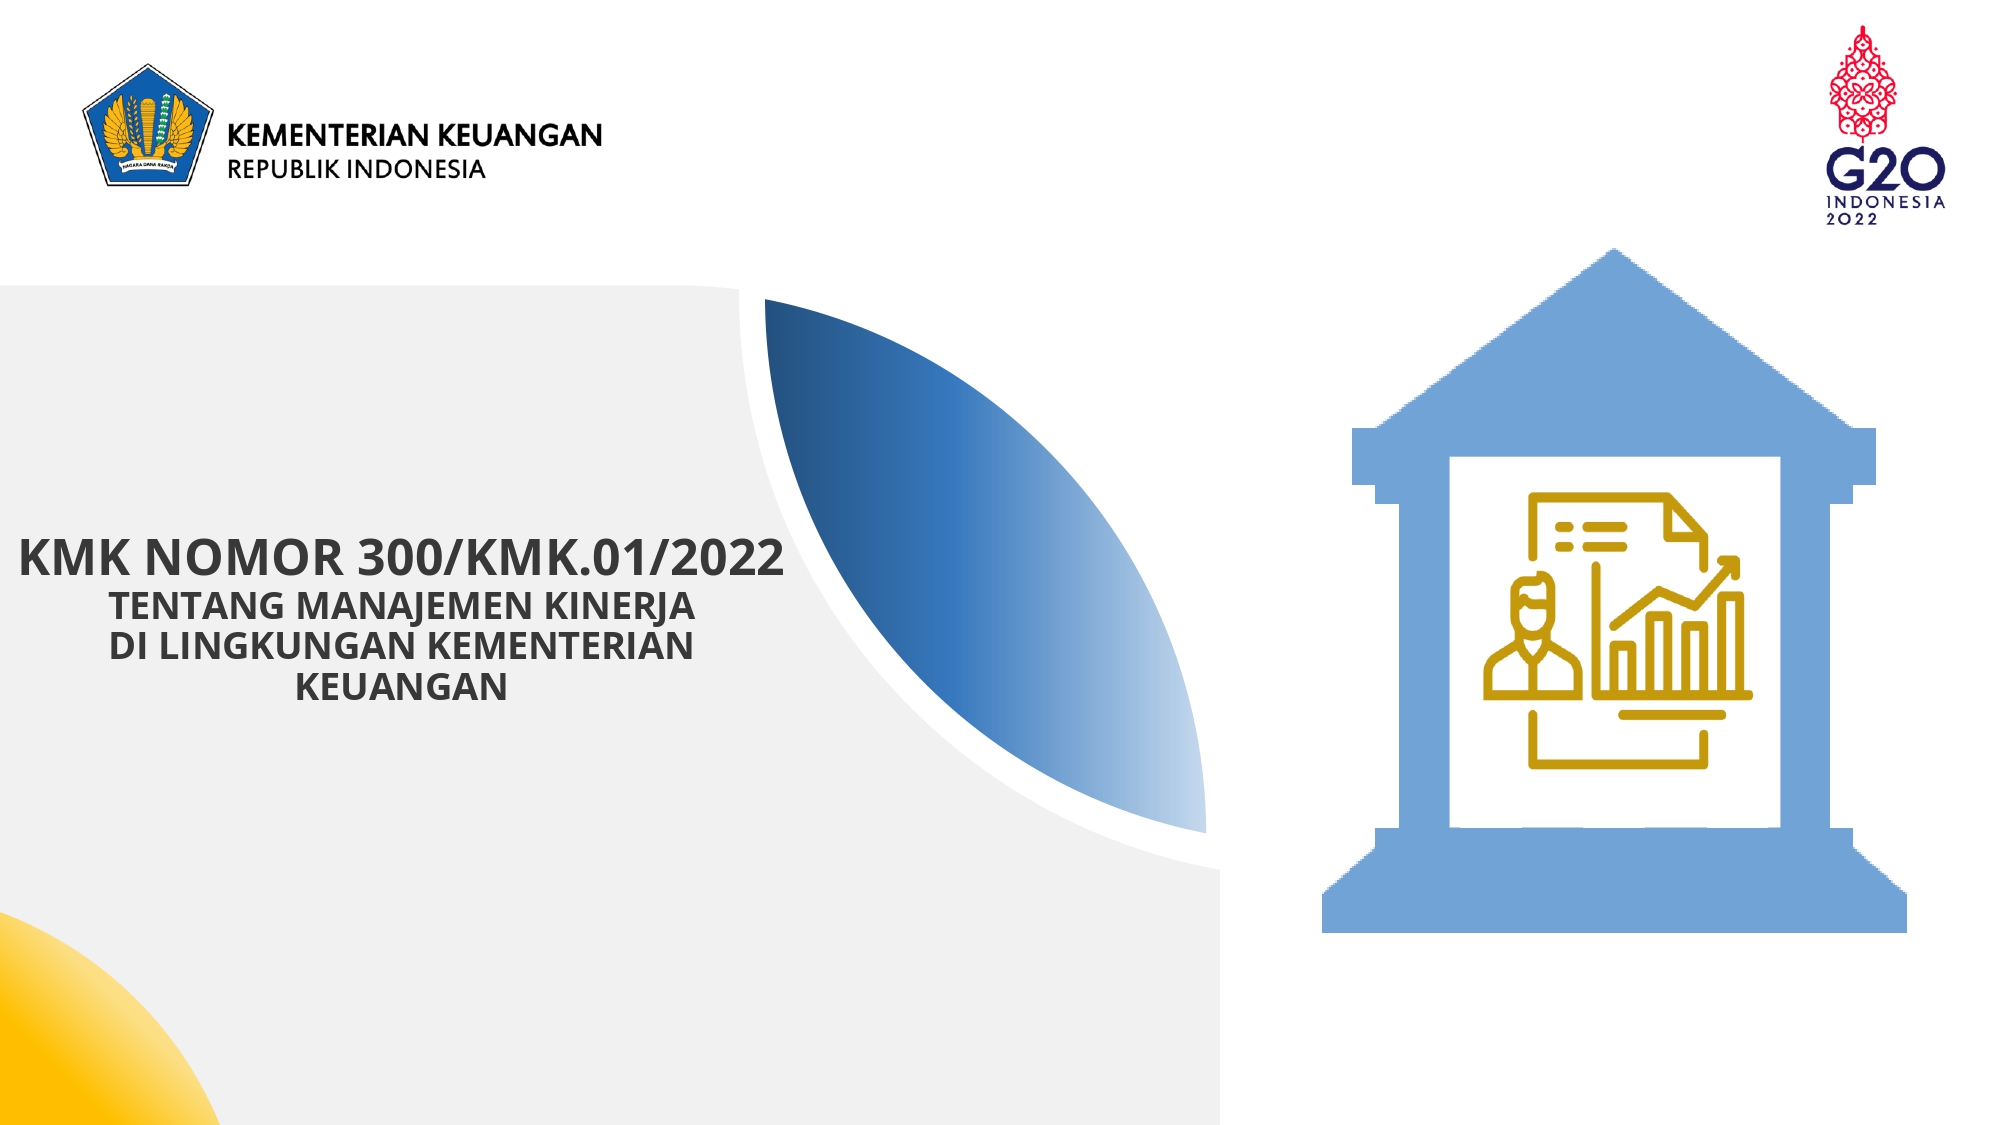 Manajemen Kinerja di Lingkungan Kementerian Keuangan berdasarkan KMK 300/KMK.01/2022